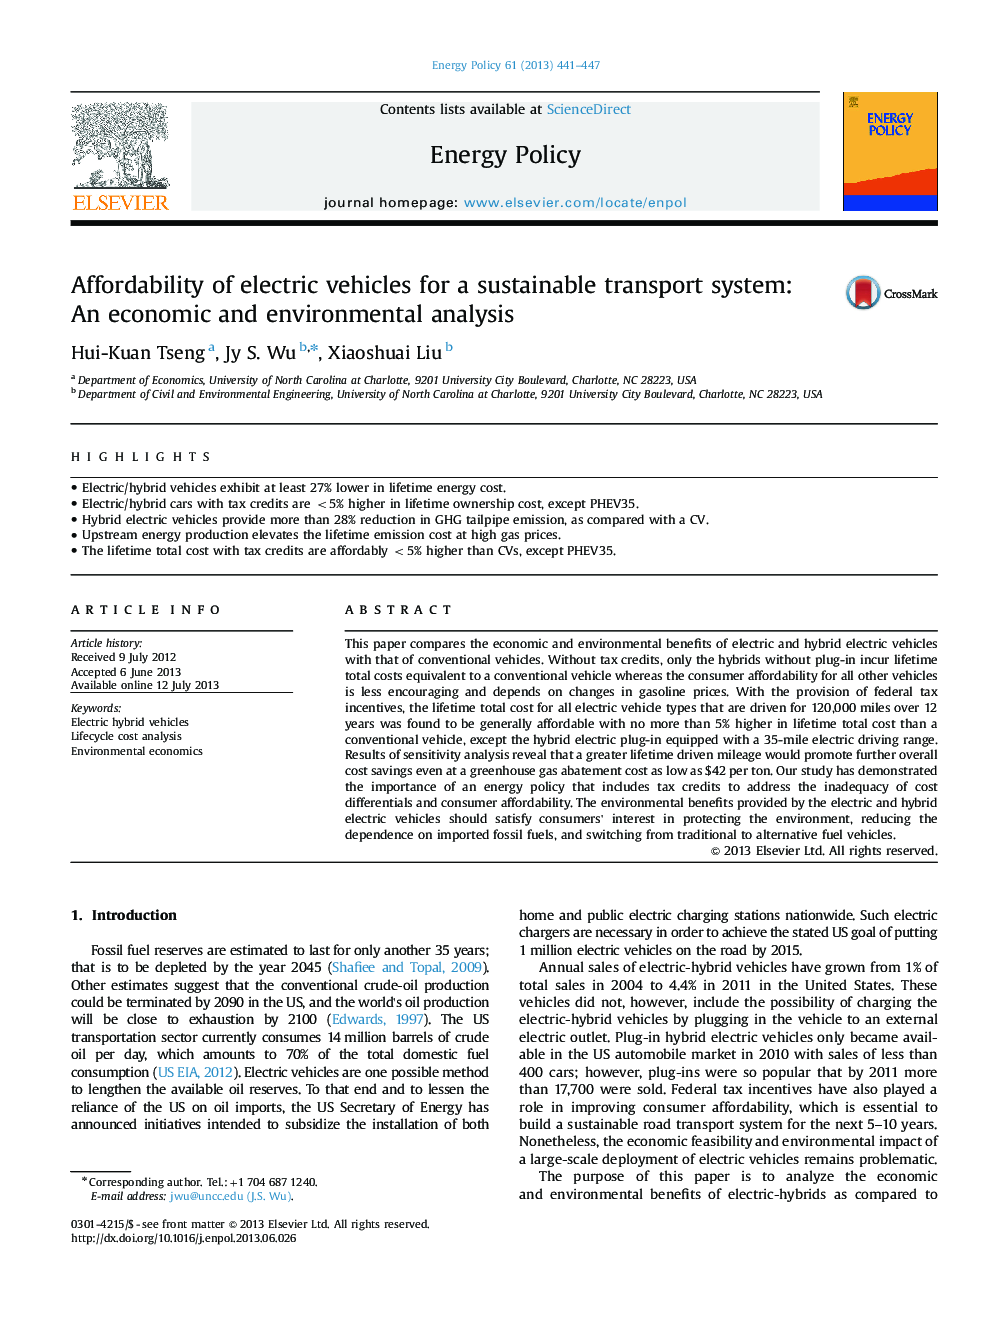 دسترسی به وسایل نقلیه الکتریکی برای یک سیستم حمل و نقل پایدار: تجزیه و تحلیل اقتصادی و محیط زیست 